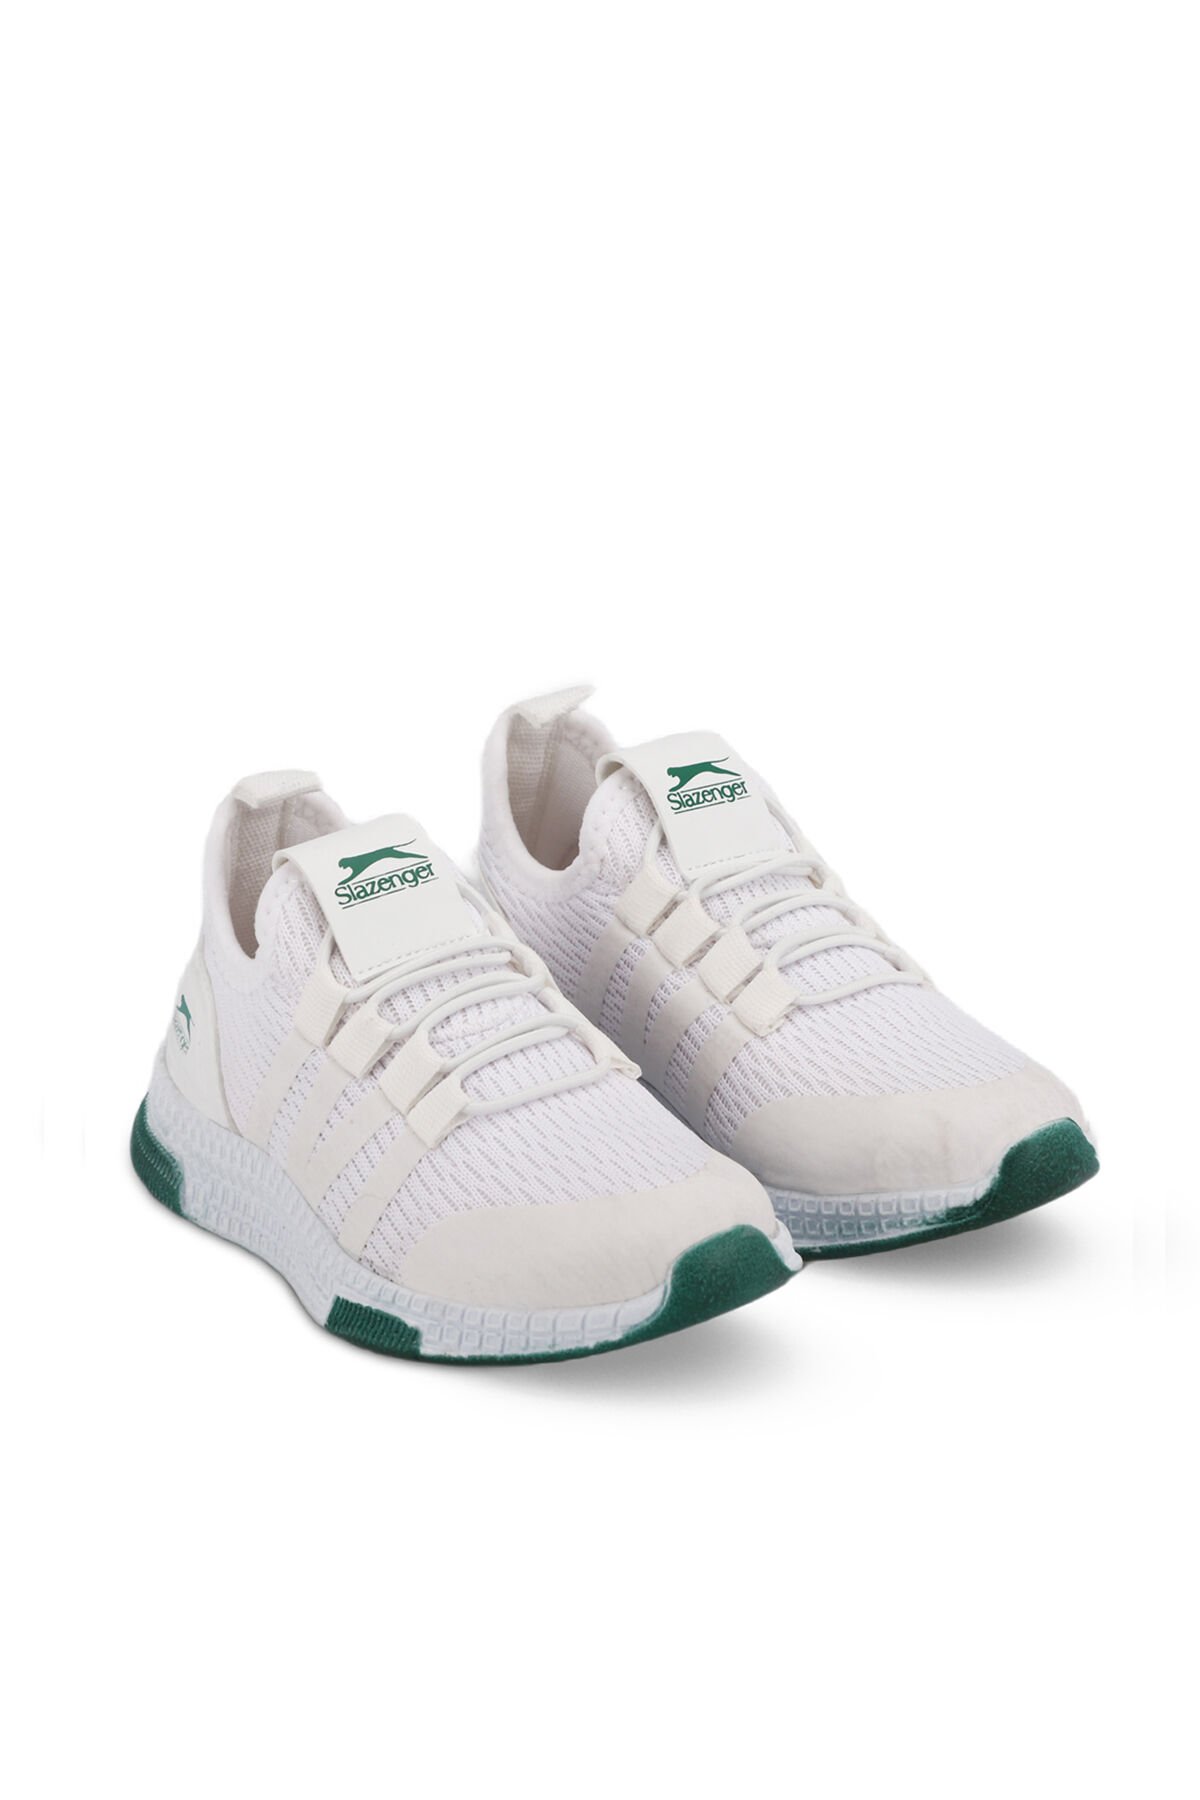 EXPO Sneaker Unisex Çocuk Ayakkabı Beyaz / Yeşil - Thumbnail